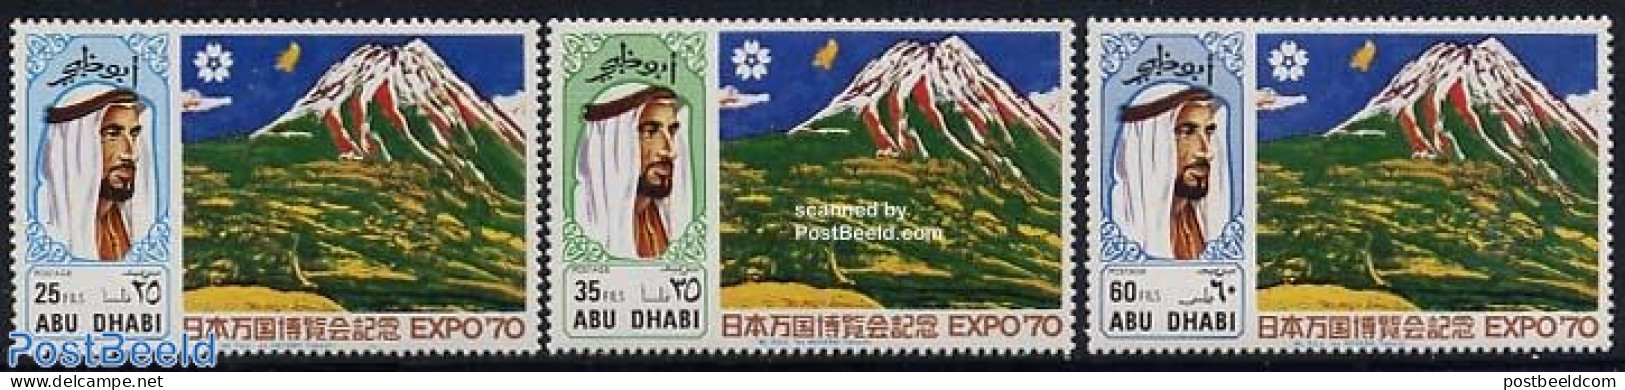 Abu Dhabi 1970 Expo 70 3v, Mint NH, Sport - Various - Mountains & Mountain Climbing - World Expositions - Escalade